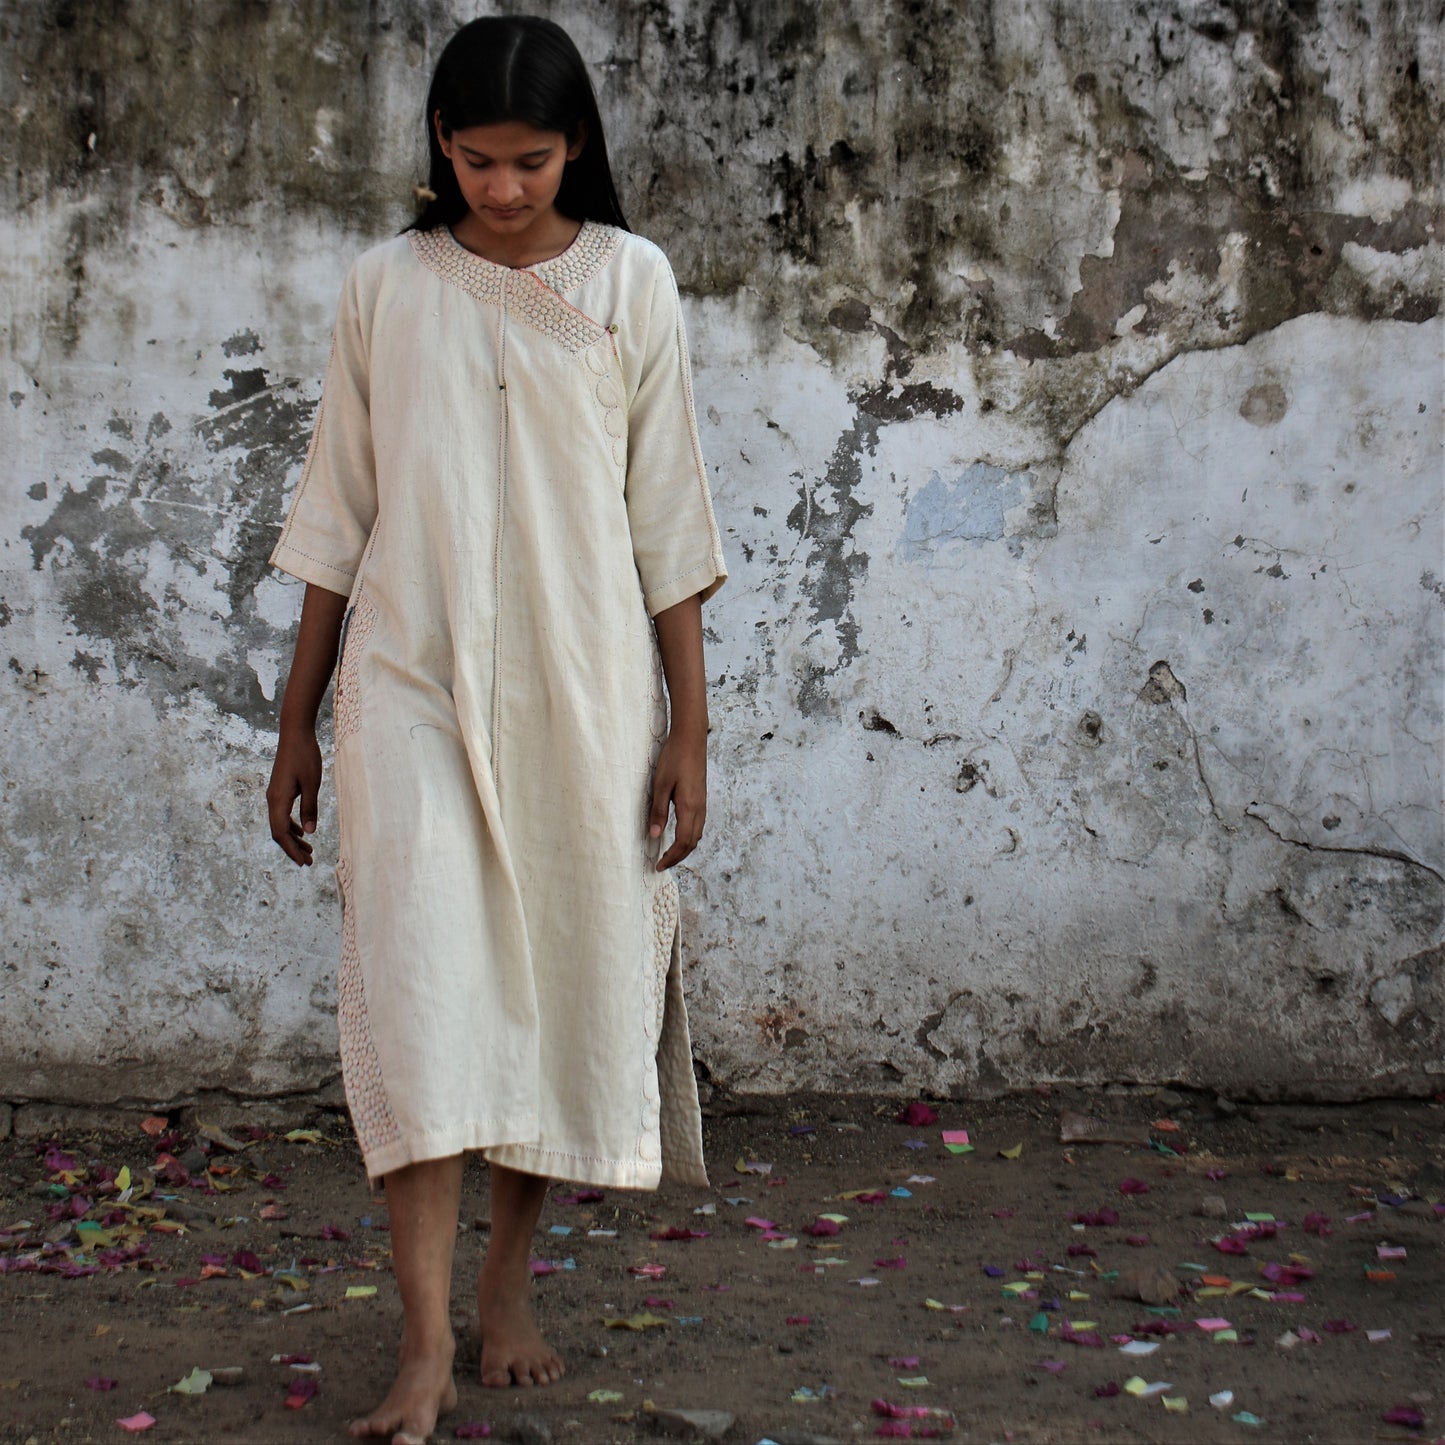 India, RaasLeela, Upcycled Textiles & Clothing